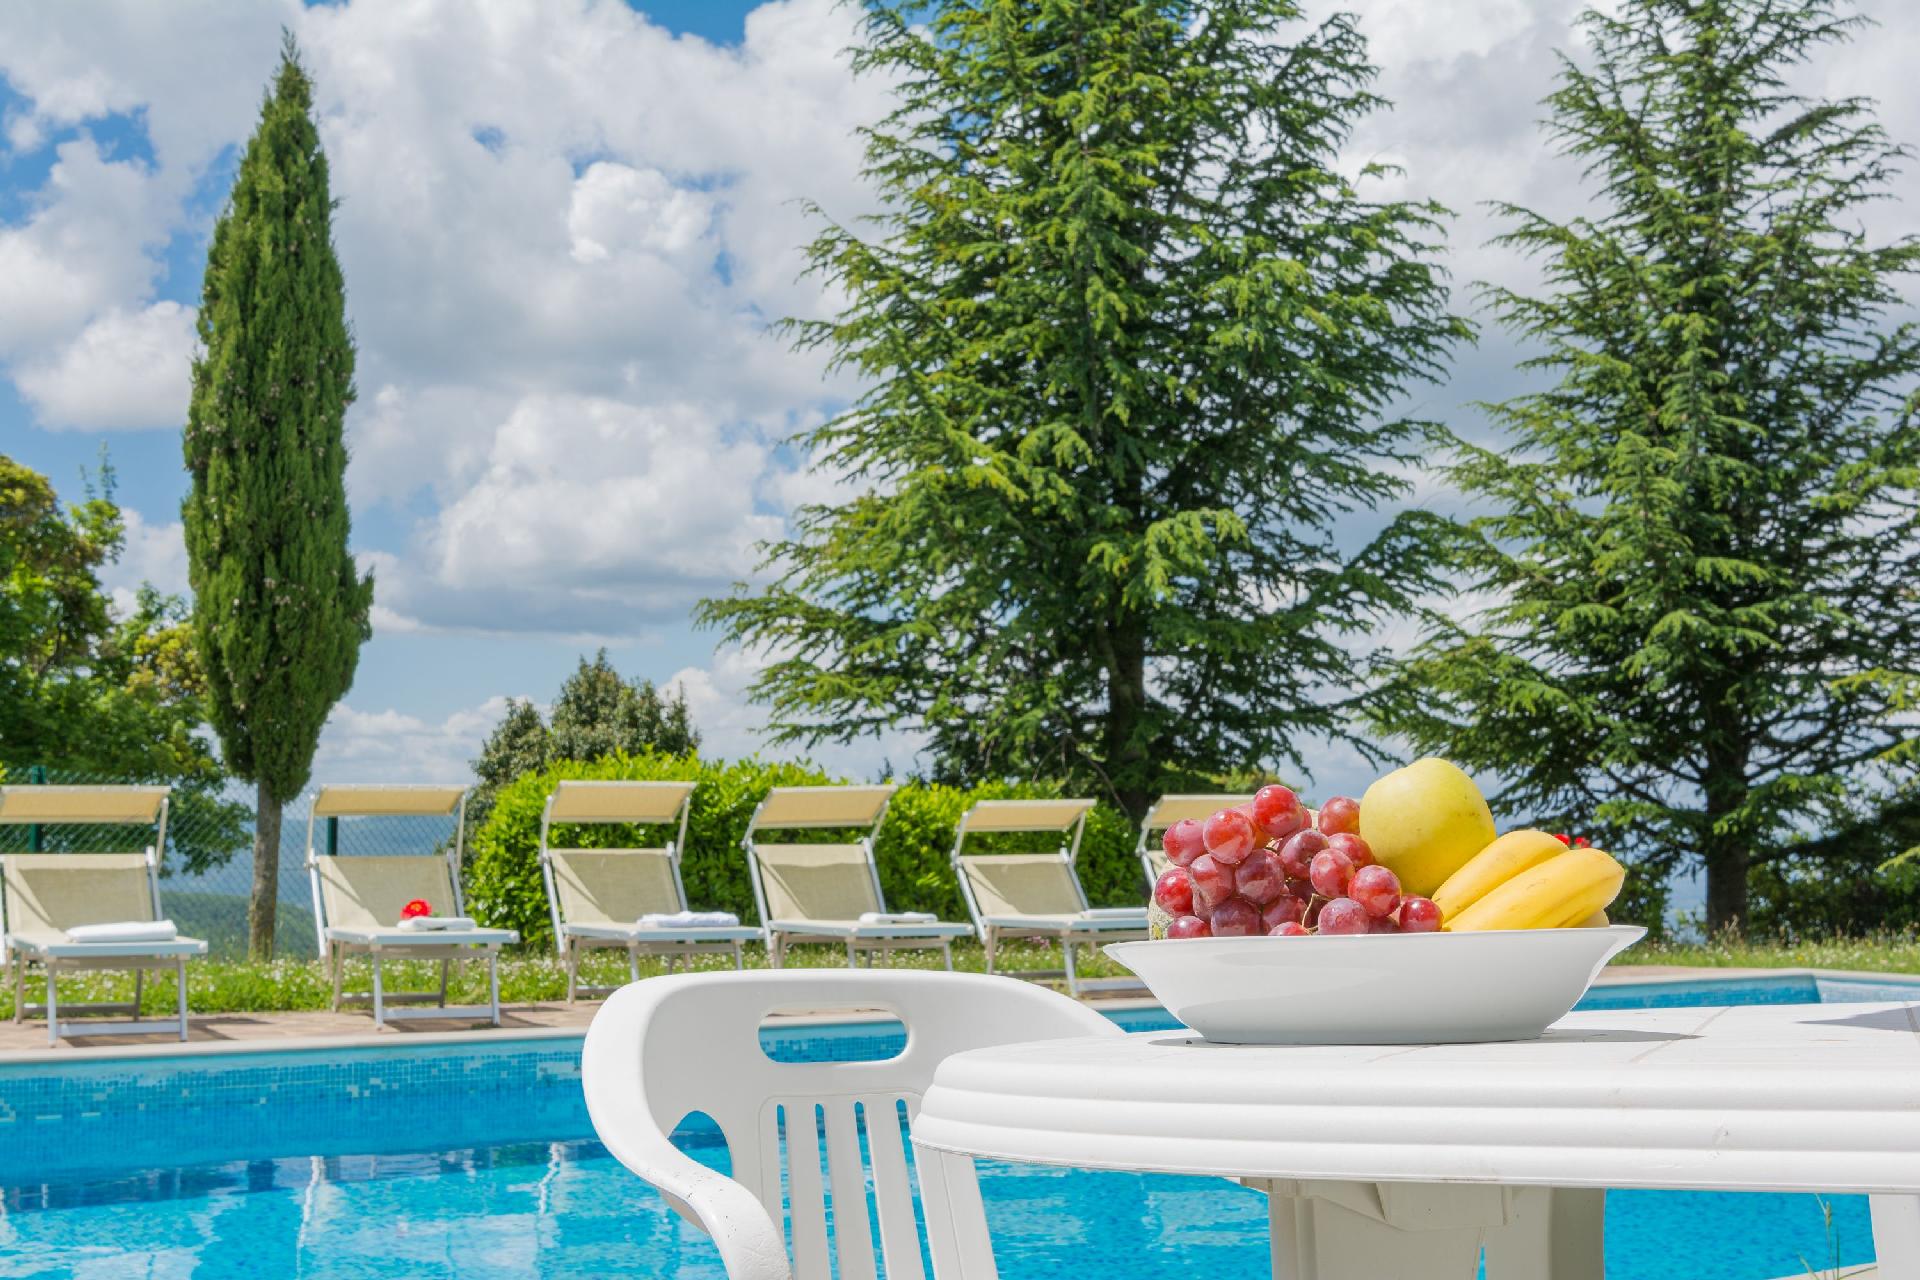 Ferienwohnung für 5 Personen ca. 100 m²  Ferienhaus in Italien